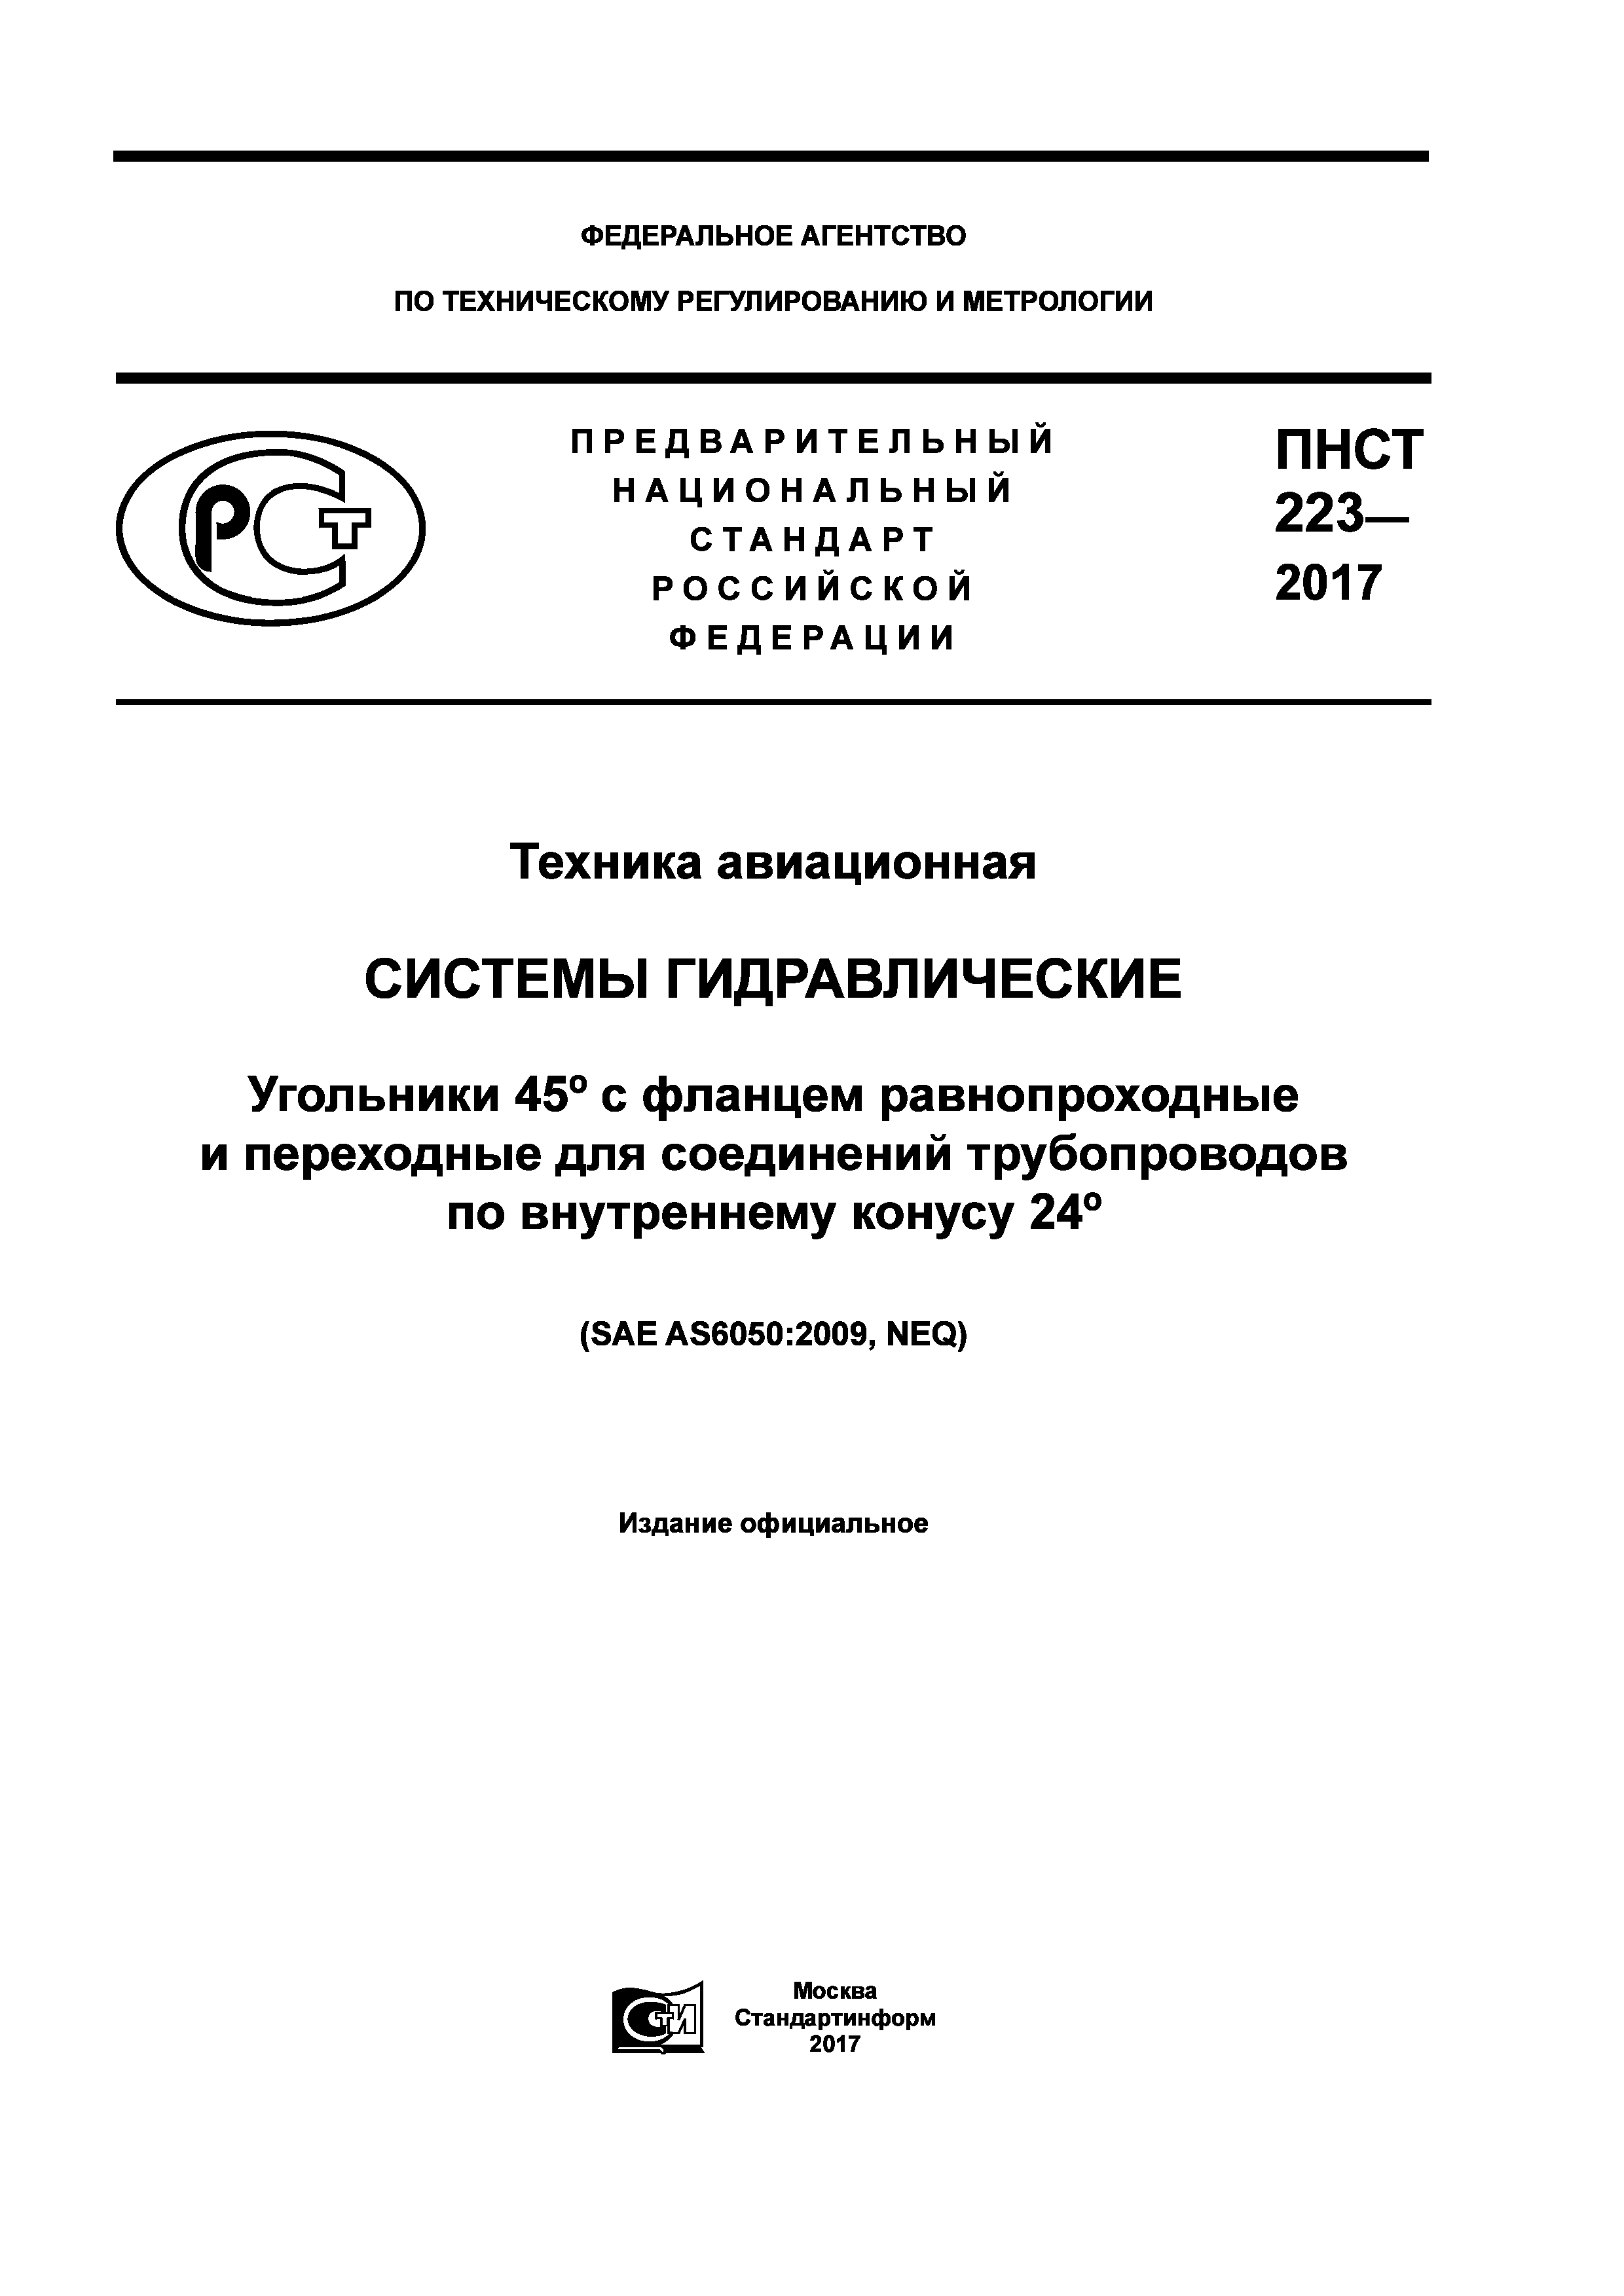 ПНСТ 223-2017